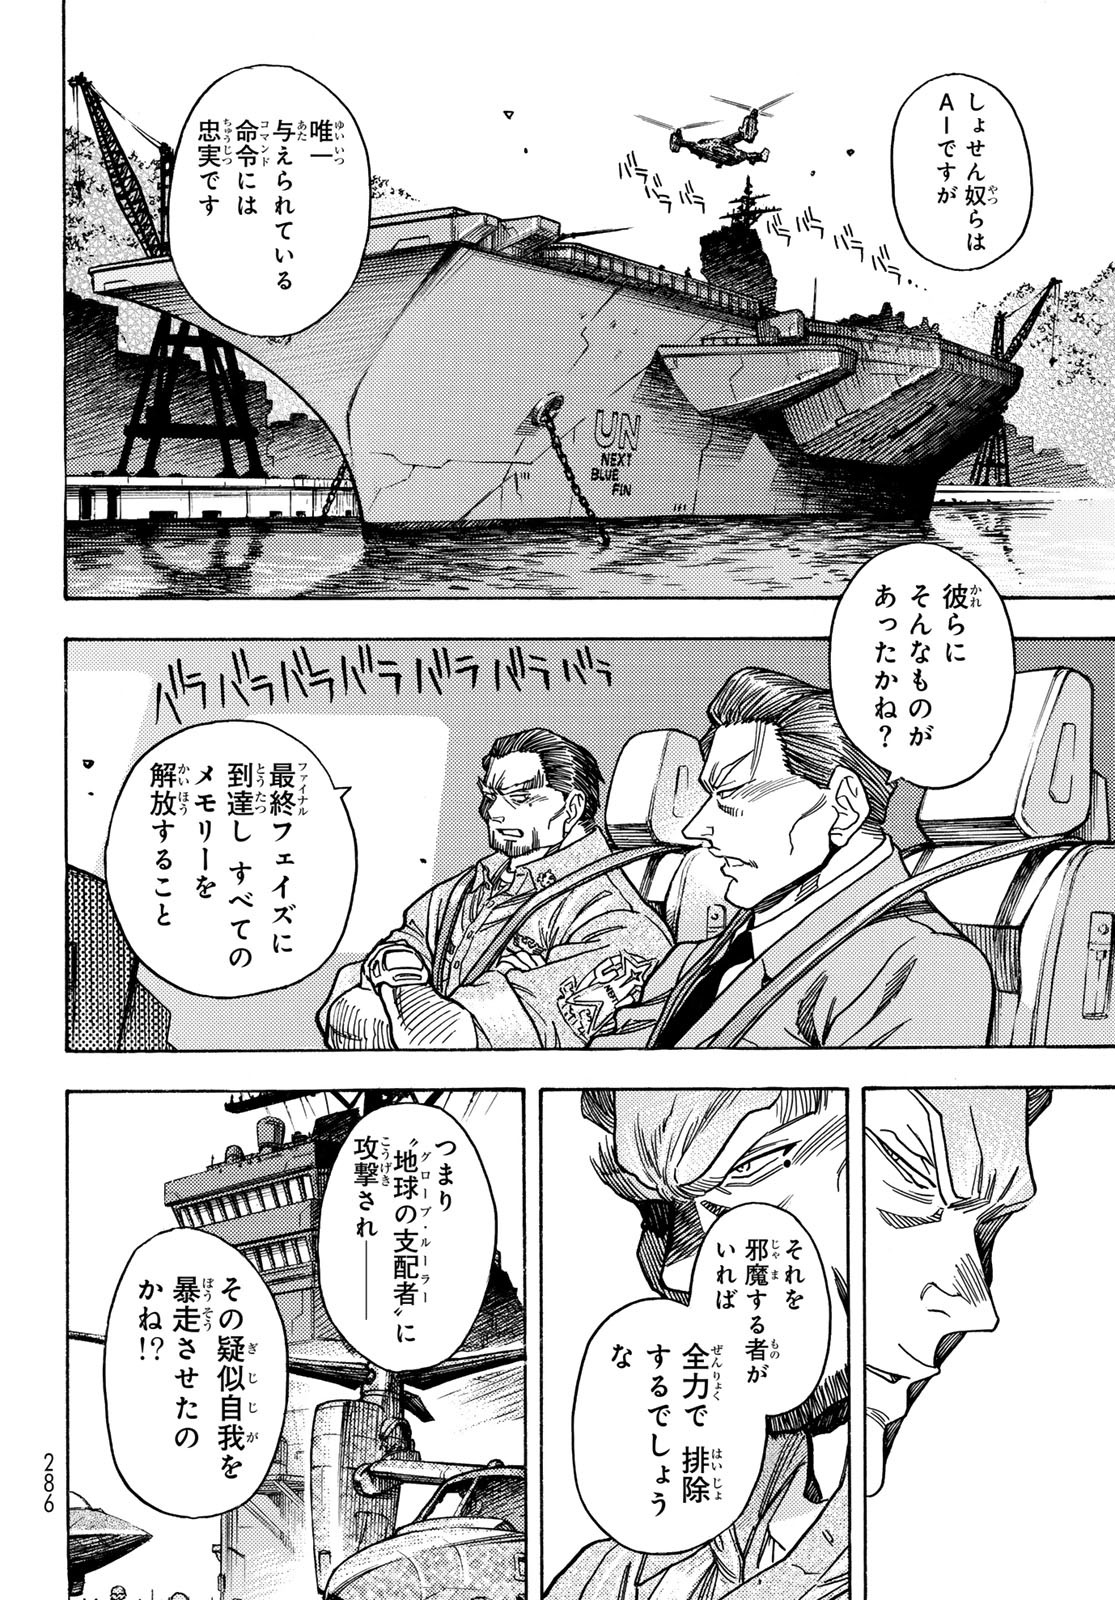 Mugou no Schnell Gear: Chikyuugai Kisouka AI - Chapter 51 - Page 2